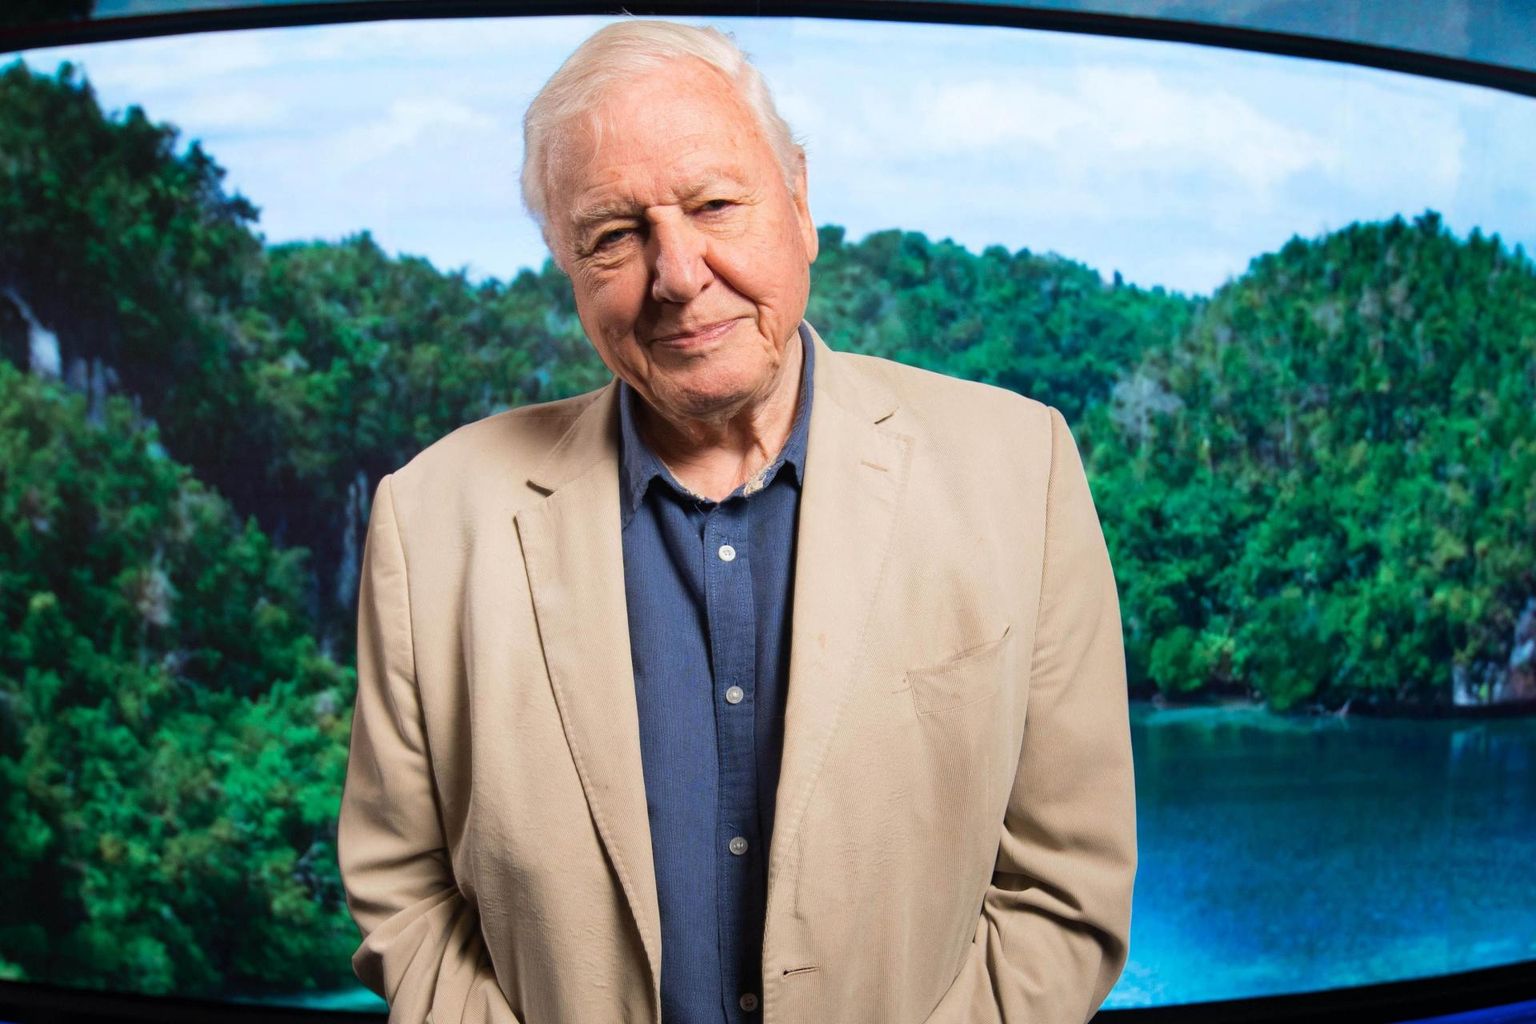 Briti loodusuurija ja telesaatejuht David Attenborough püstitas üle-eelmisel nädalal rekordi, kui kogus vähem kui viie tunni jooksul pärast Instagramiga liitumist miljon jälgijat. 